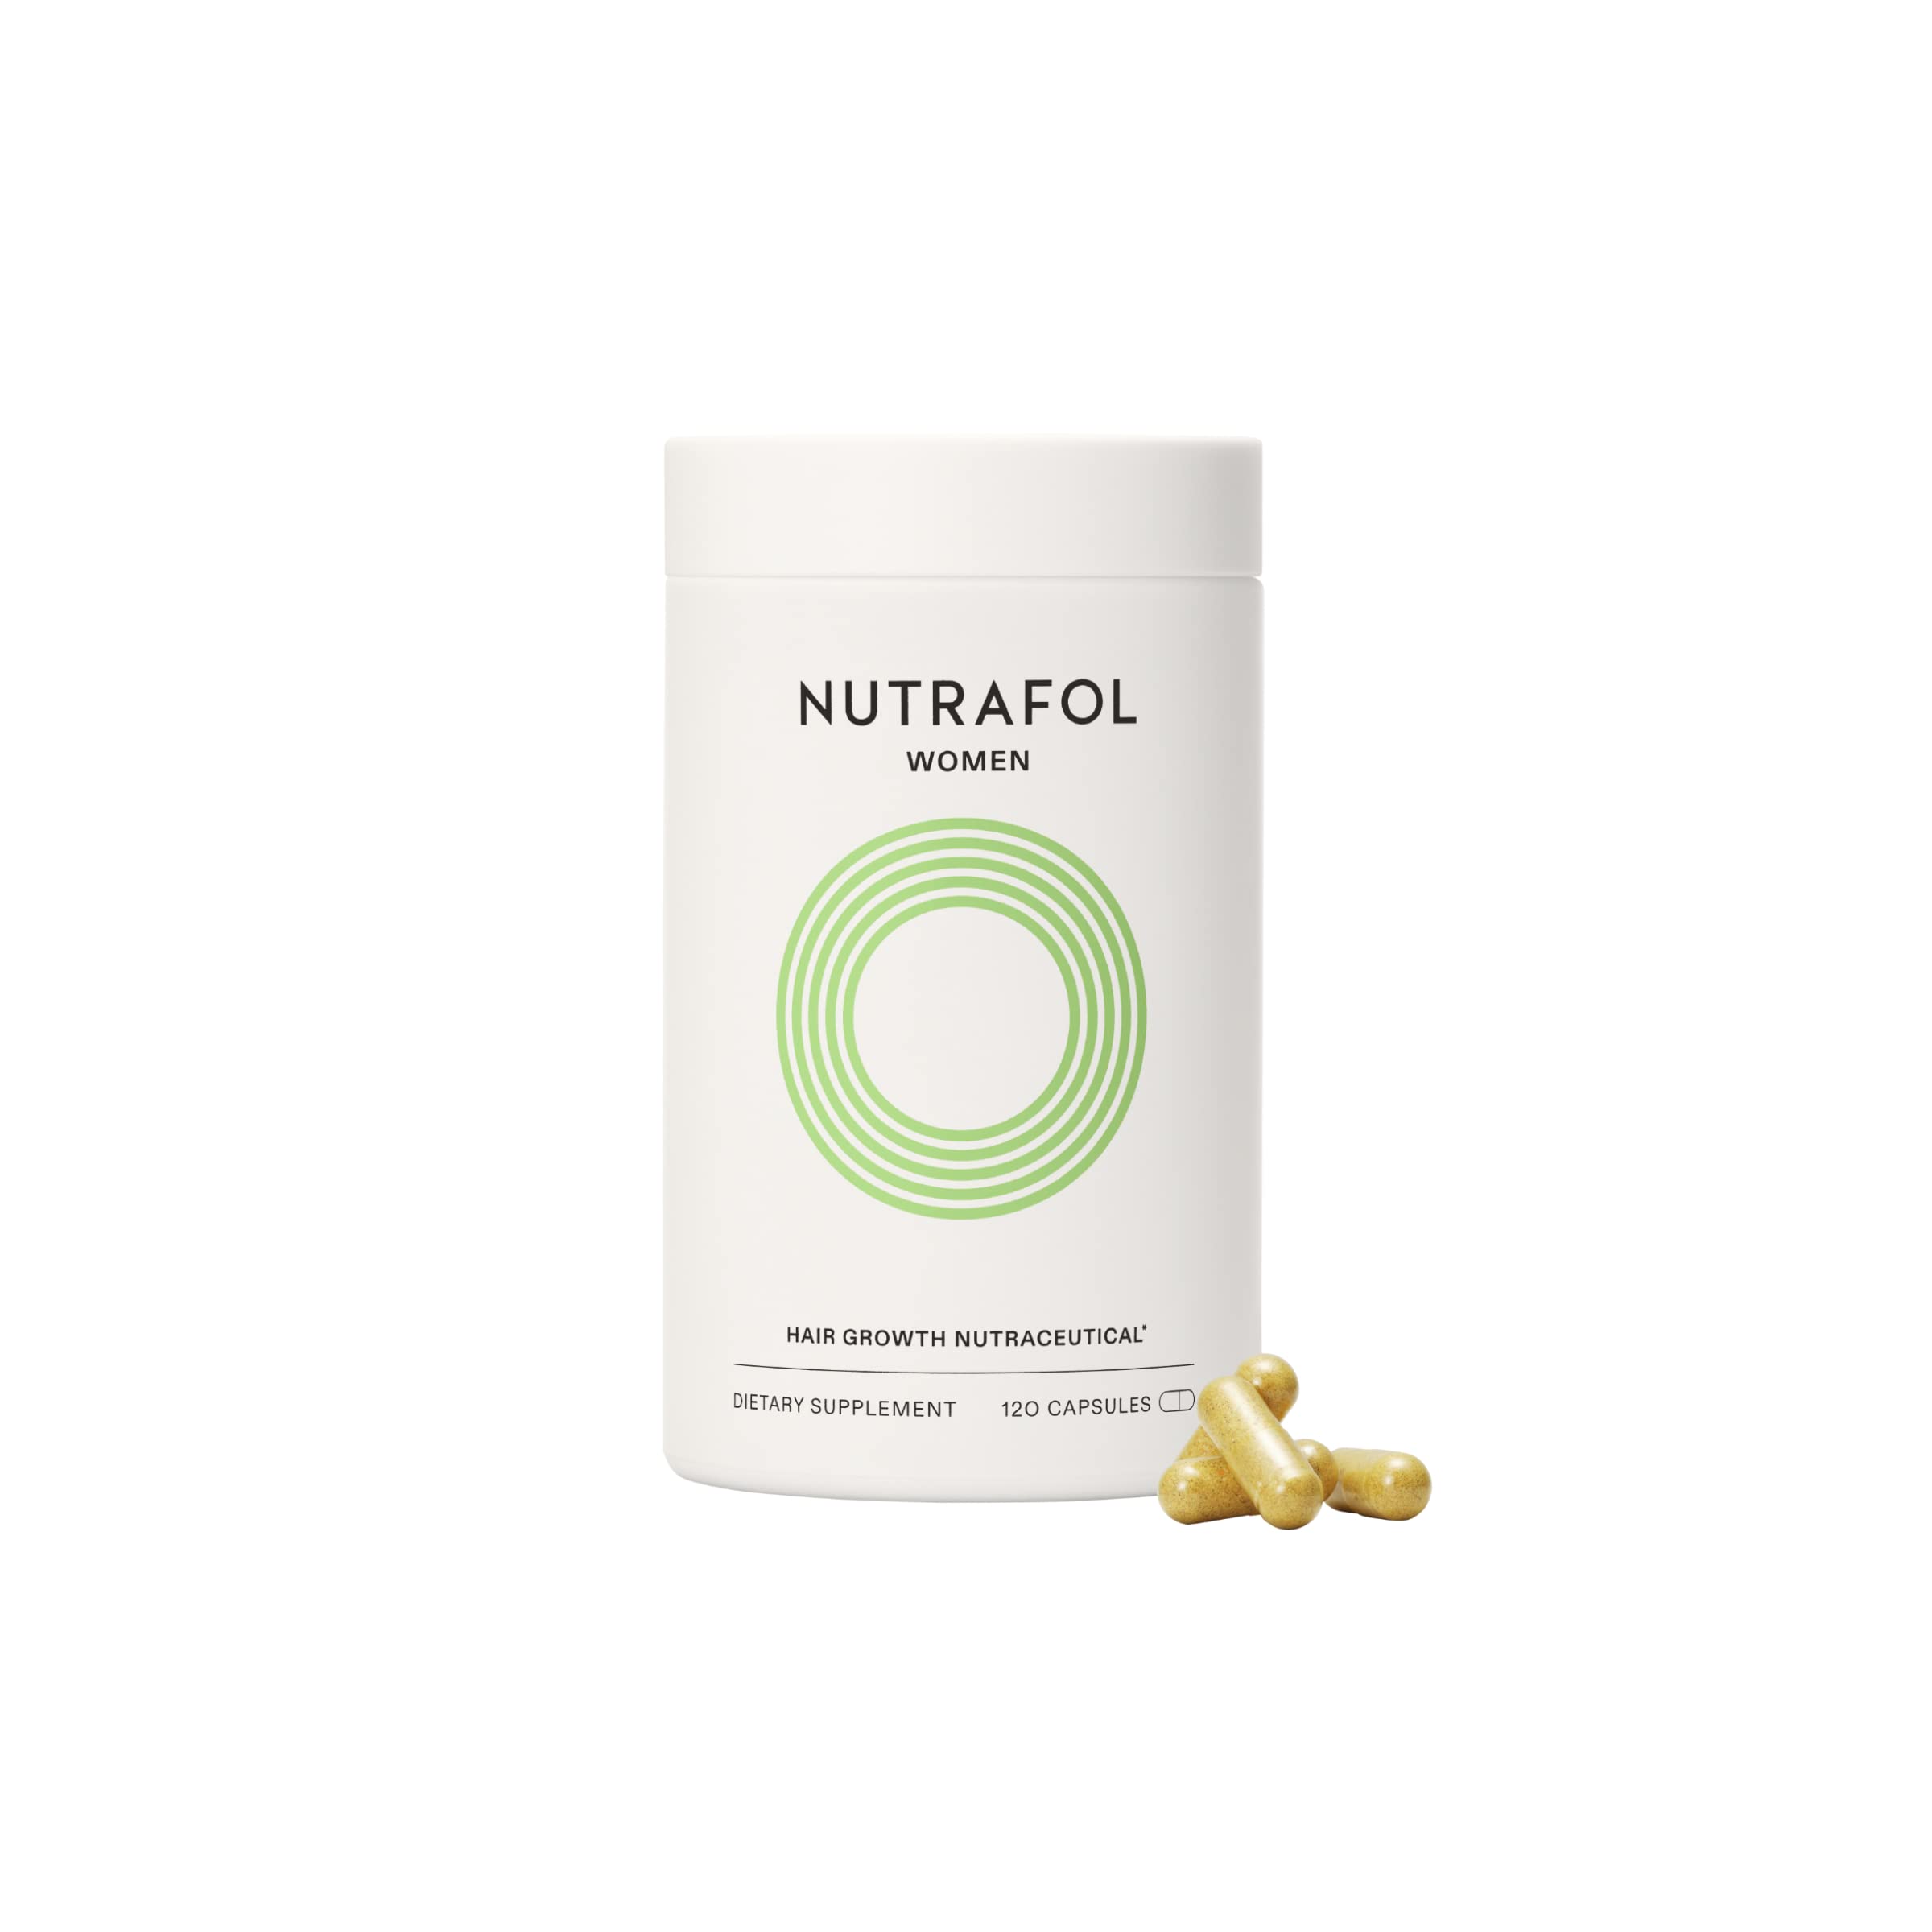  Nutrafol مكمل غذائي لنمو الشعر للسيدات | الأعمار من 18 إلى 44 | ثبت إكلينيكيًا لشعر أقوى وأسمك بشكل واضح | يوصى به أطباء...